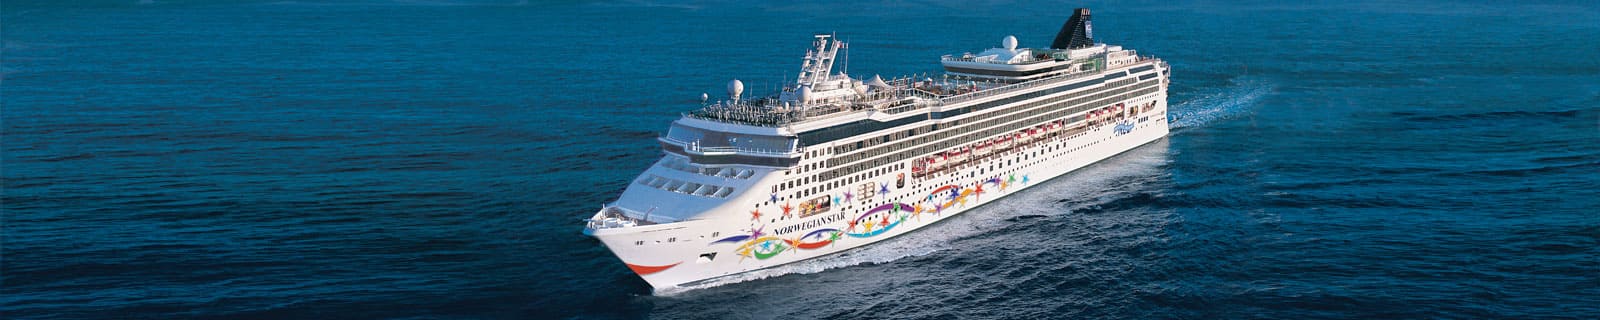 star norwegian cruise line